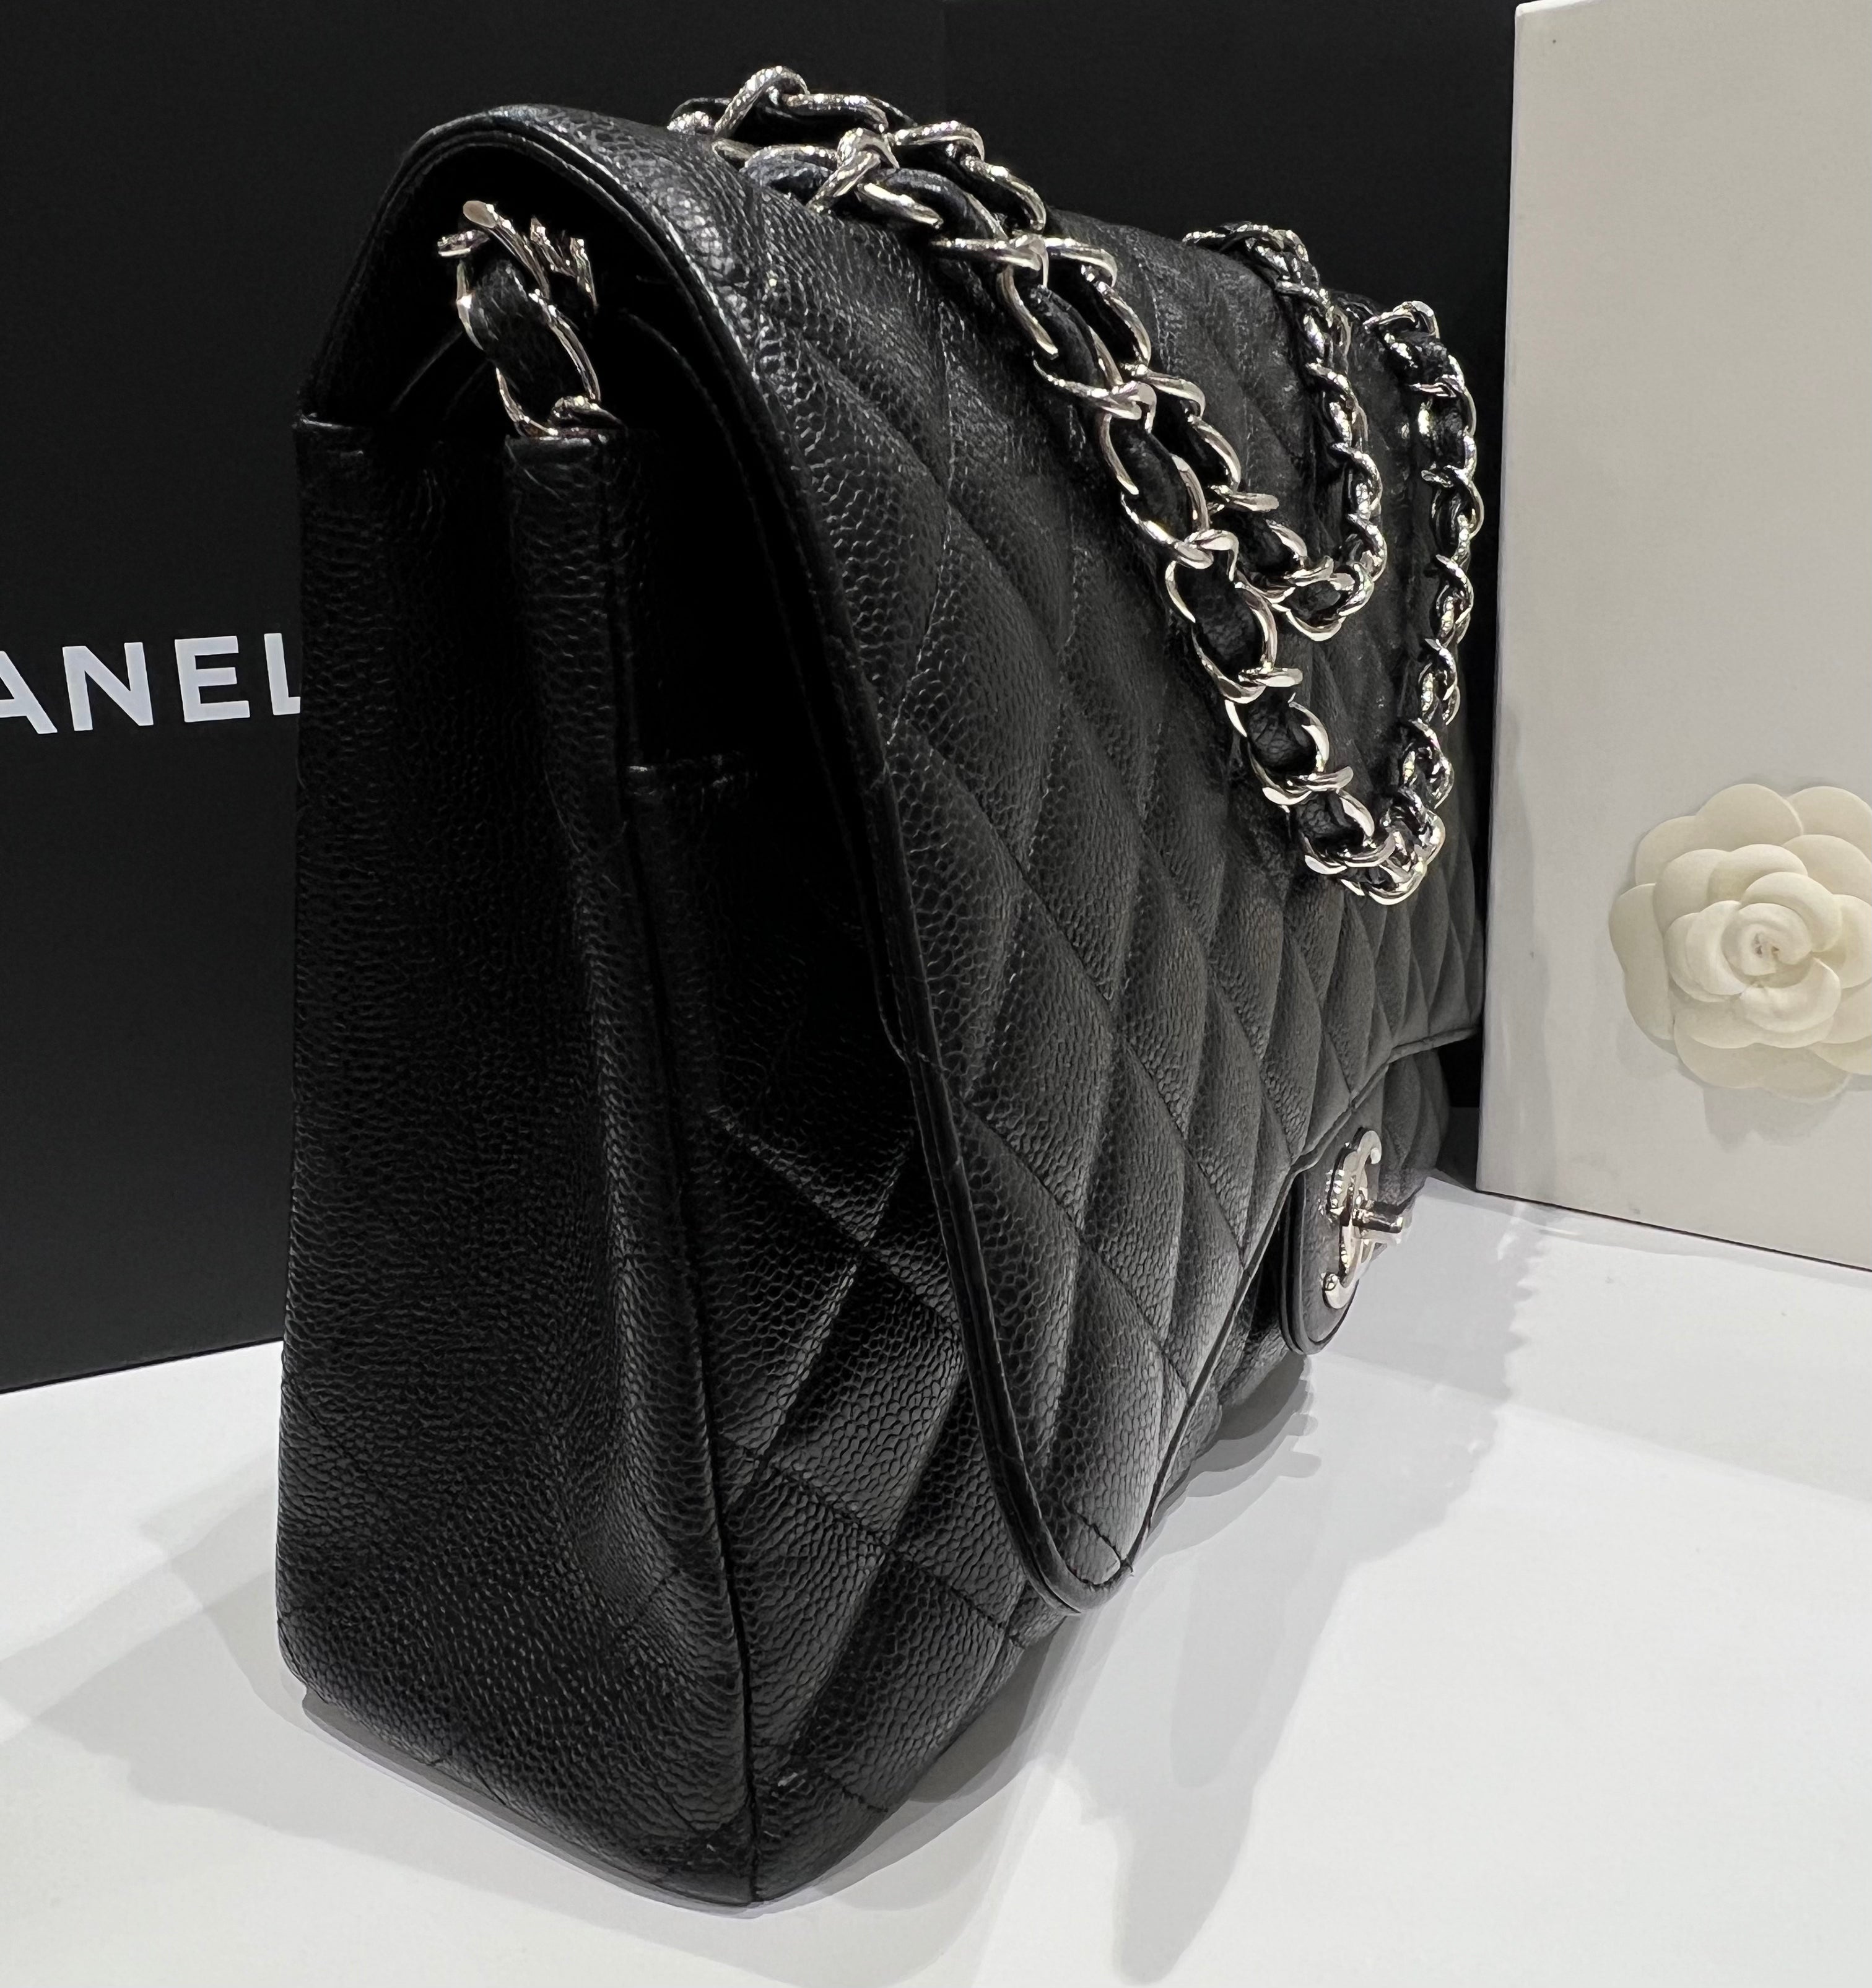 Chanel - bolso clásico maxi jumbo de piel de caviar negro